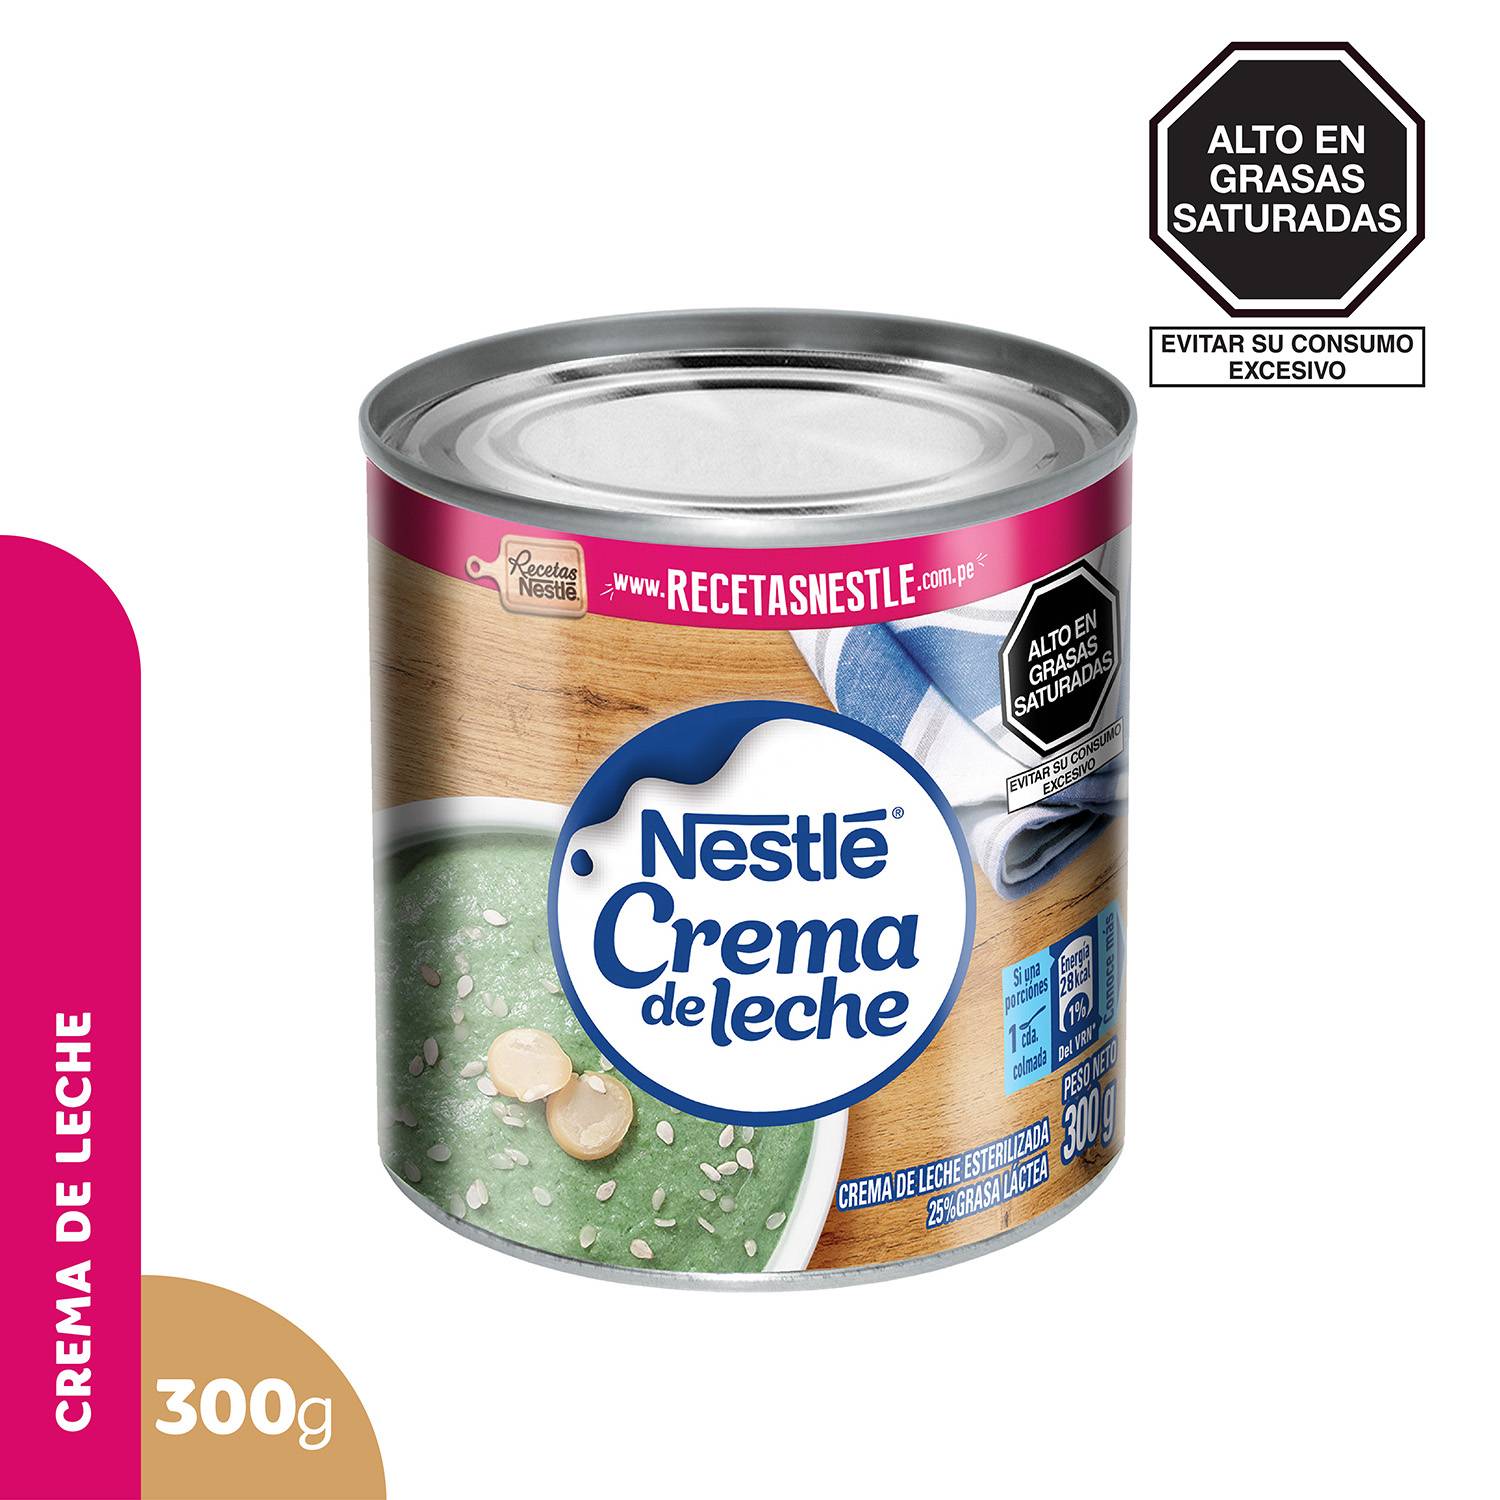 Crema de leche Nestlé 300 g | Tottus Perú